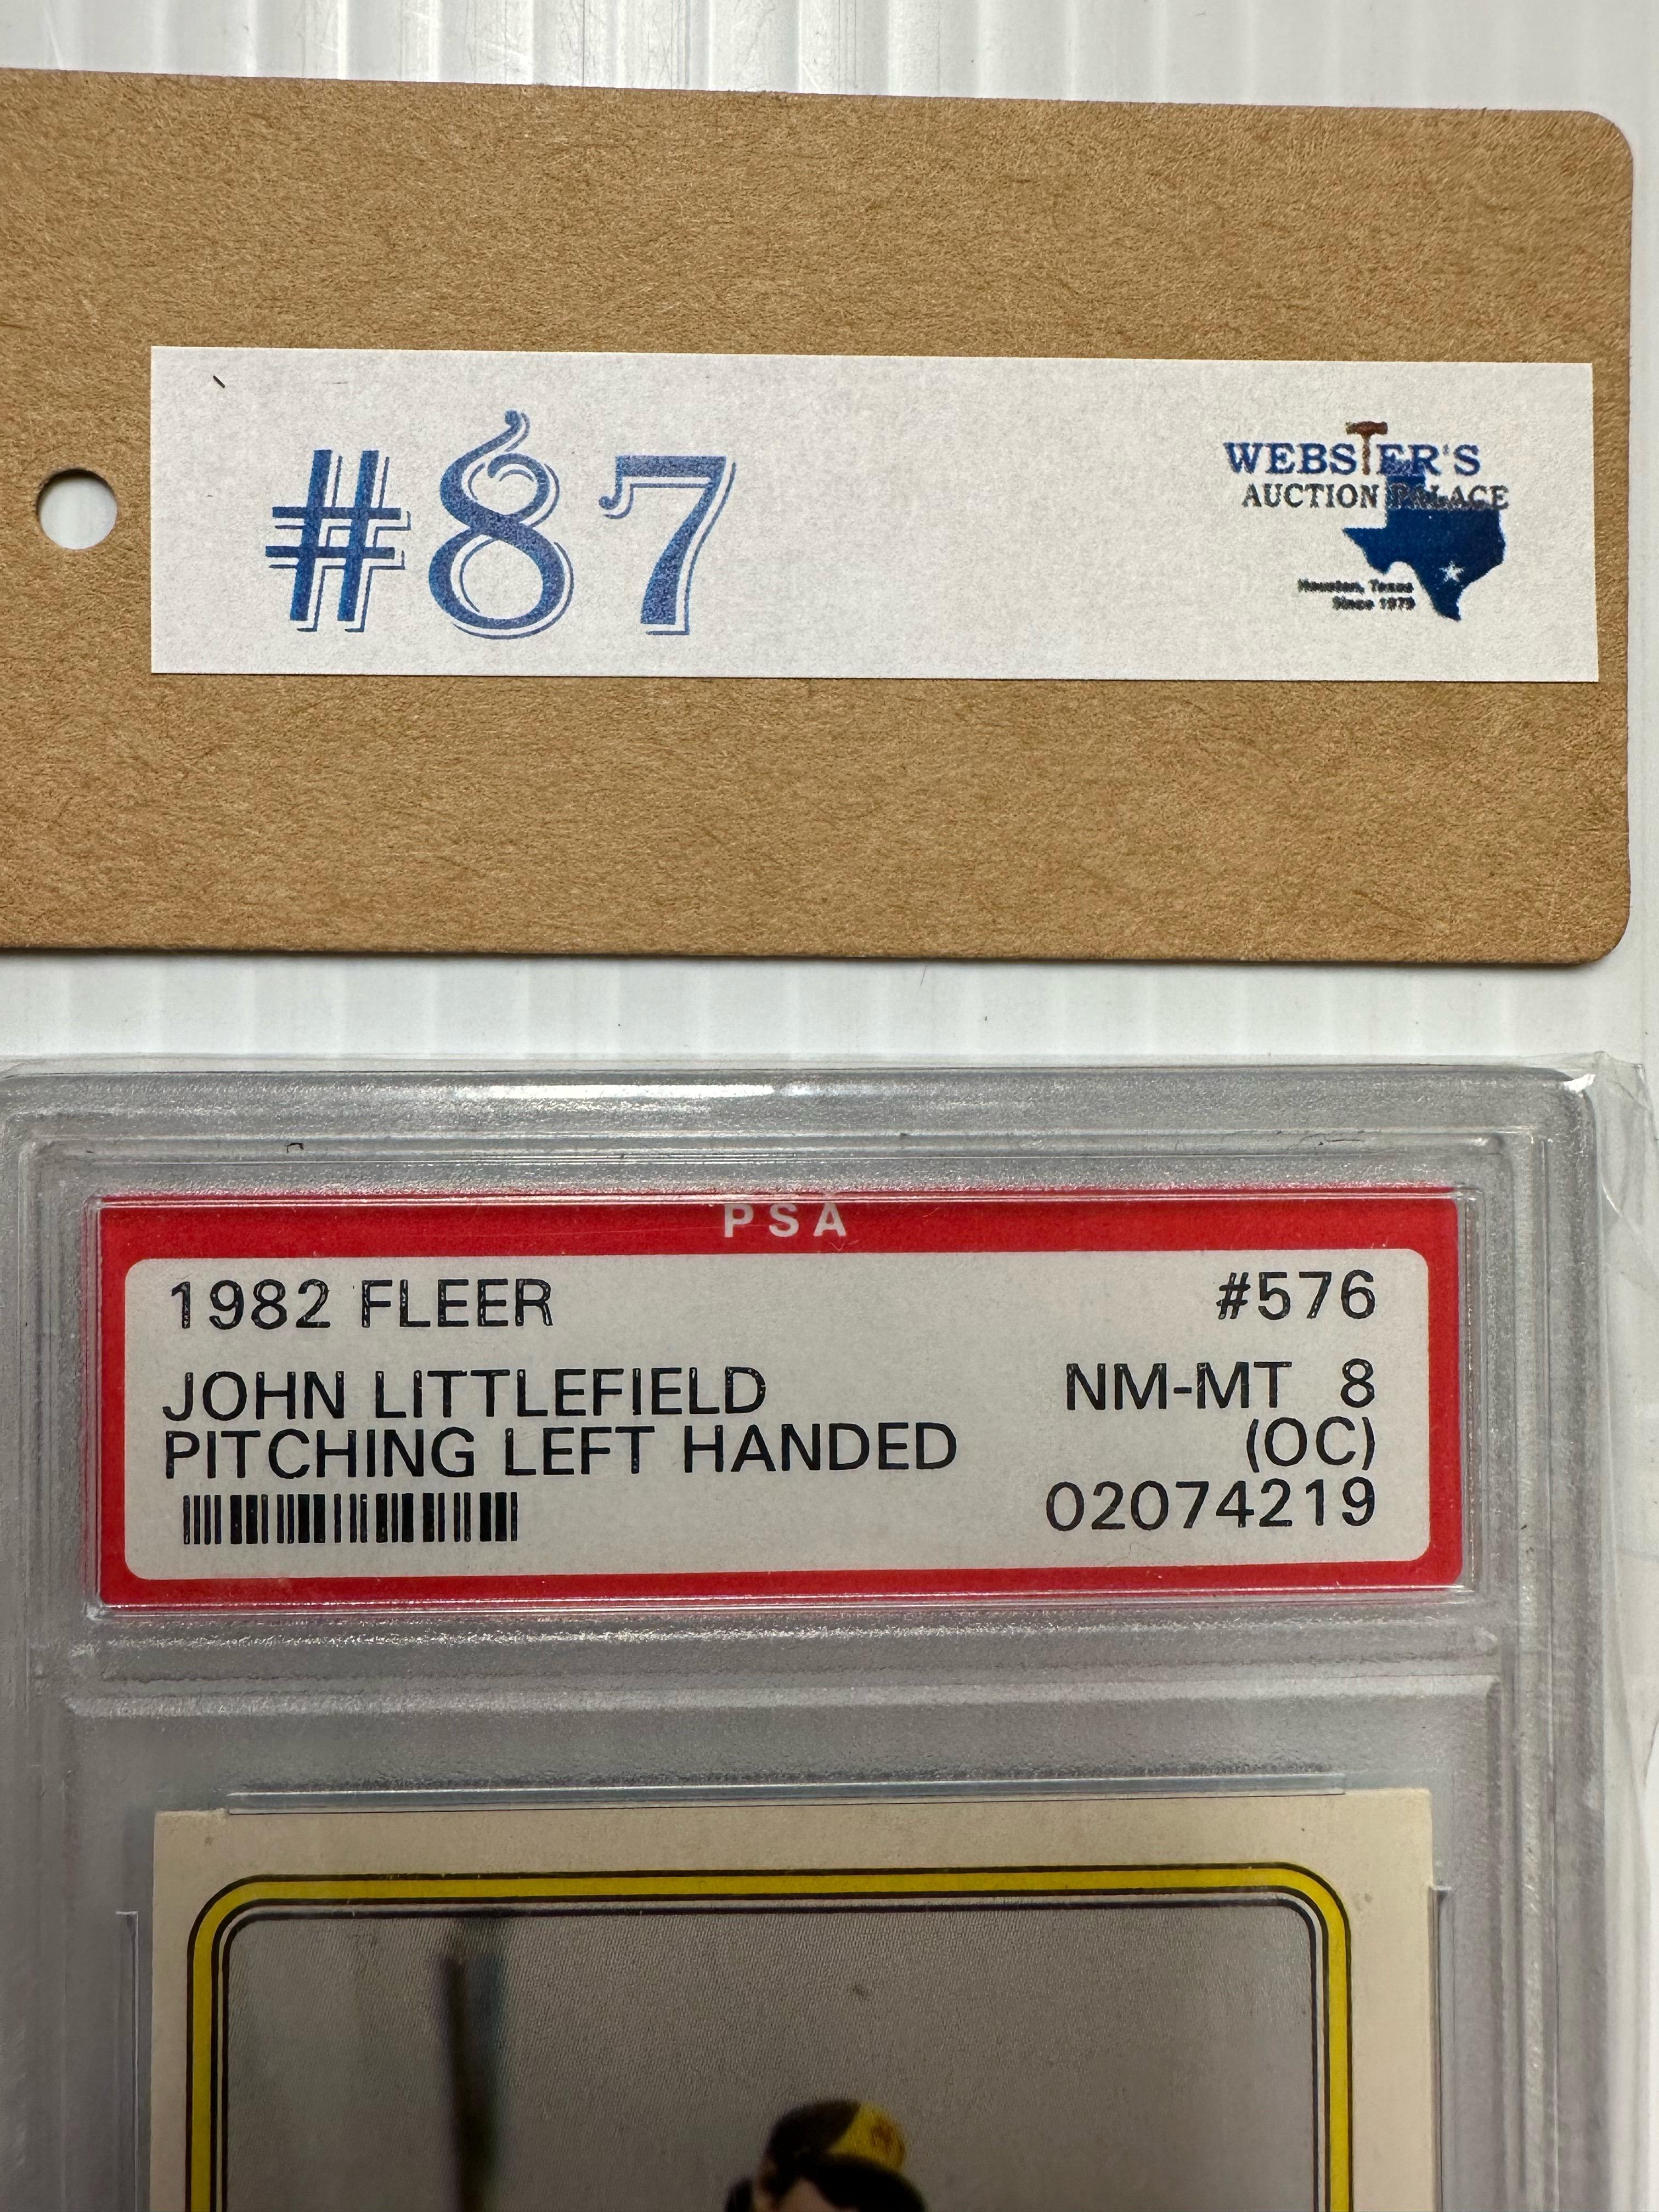 1982 FLEER JOHN LITTLEFIELD GRADED PSA NM-MT 8 BASEBALL CARD